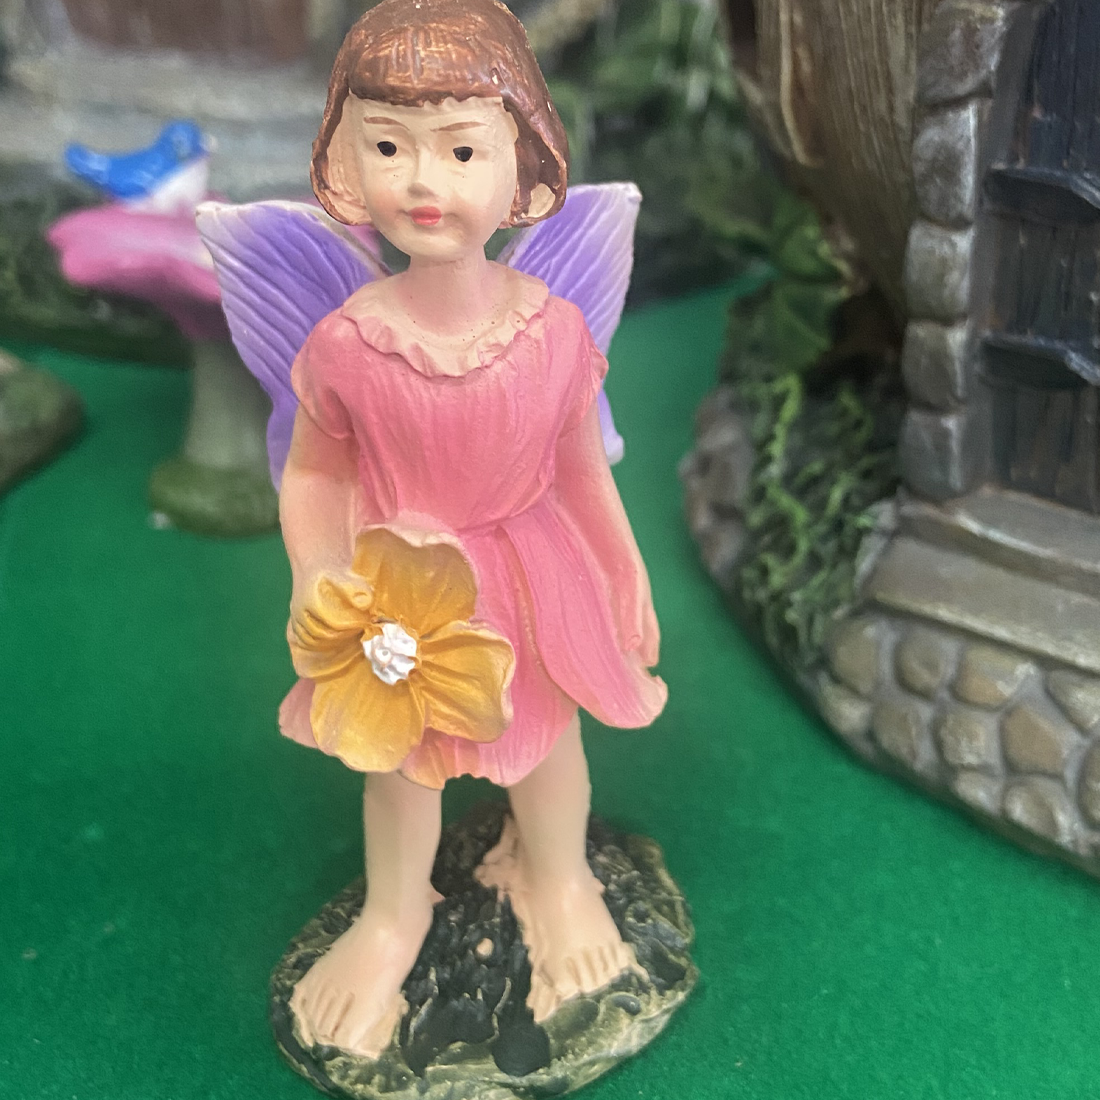 Pink or Purple Fairy Garden Figurine